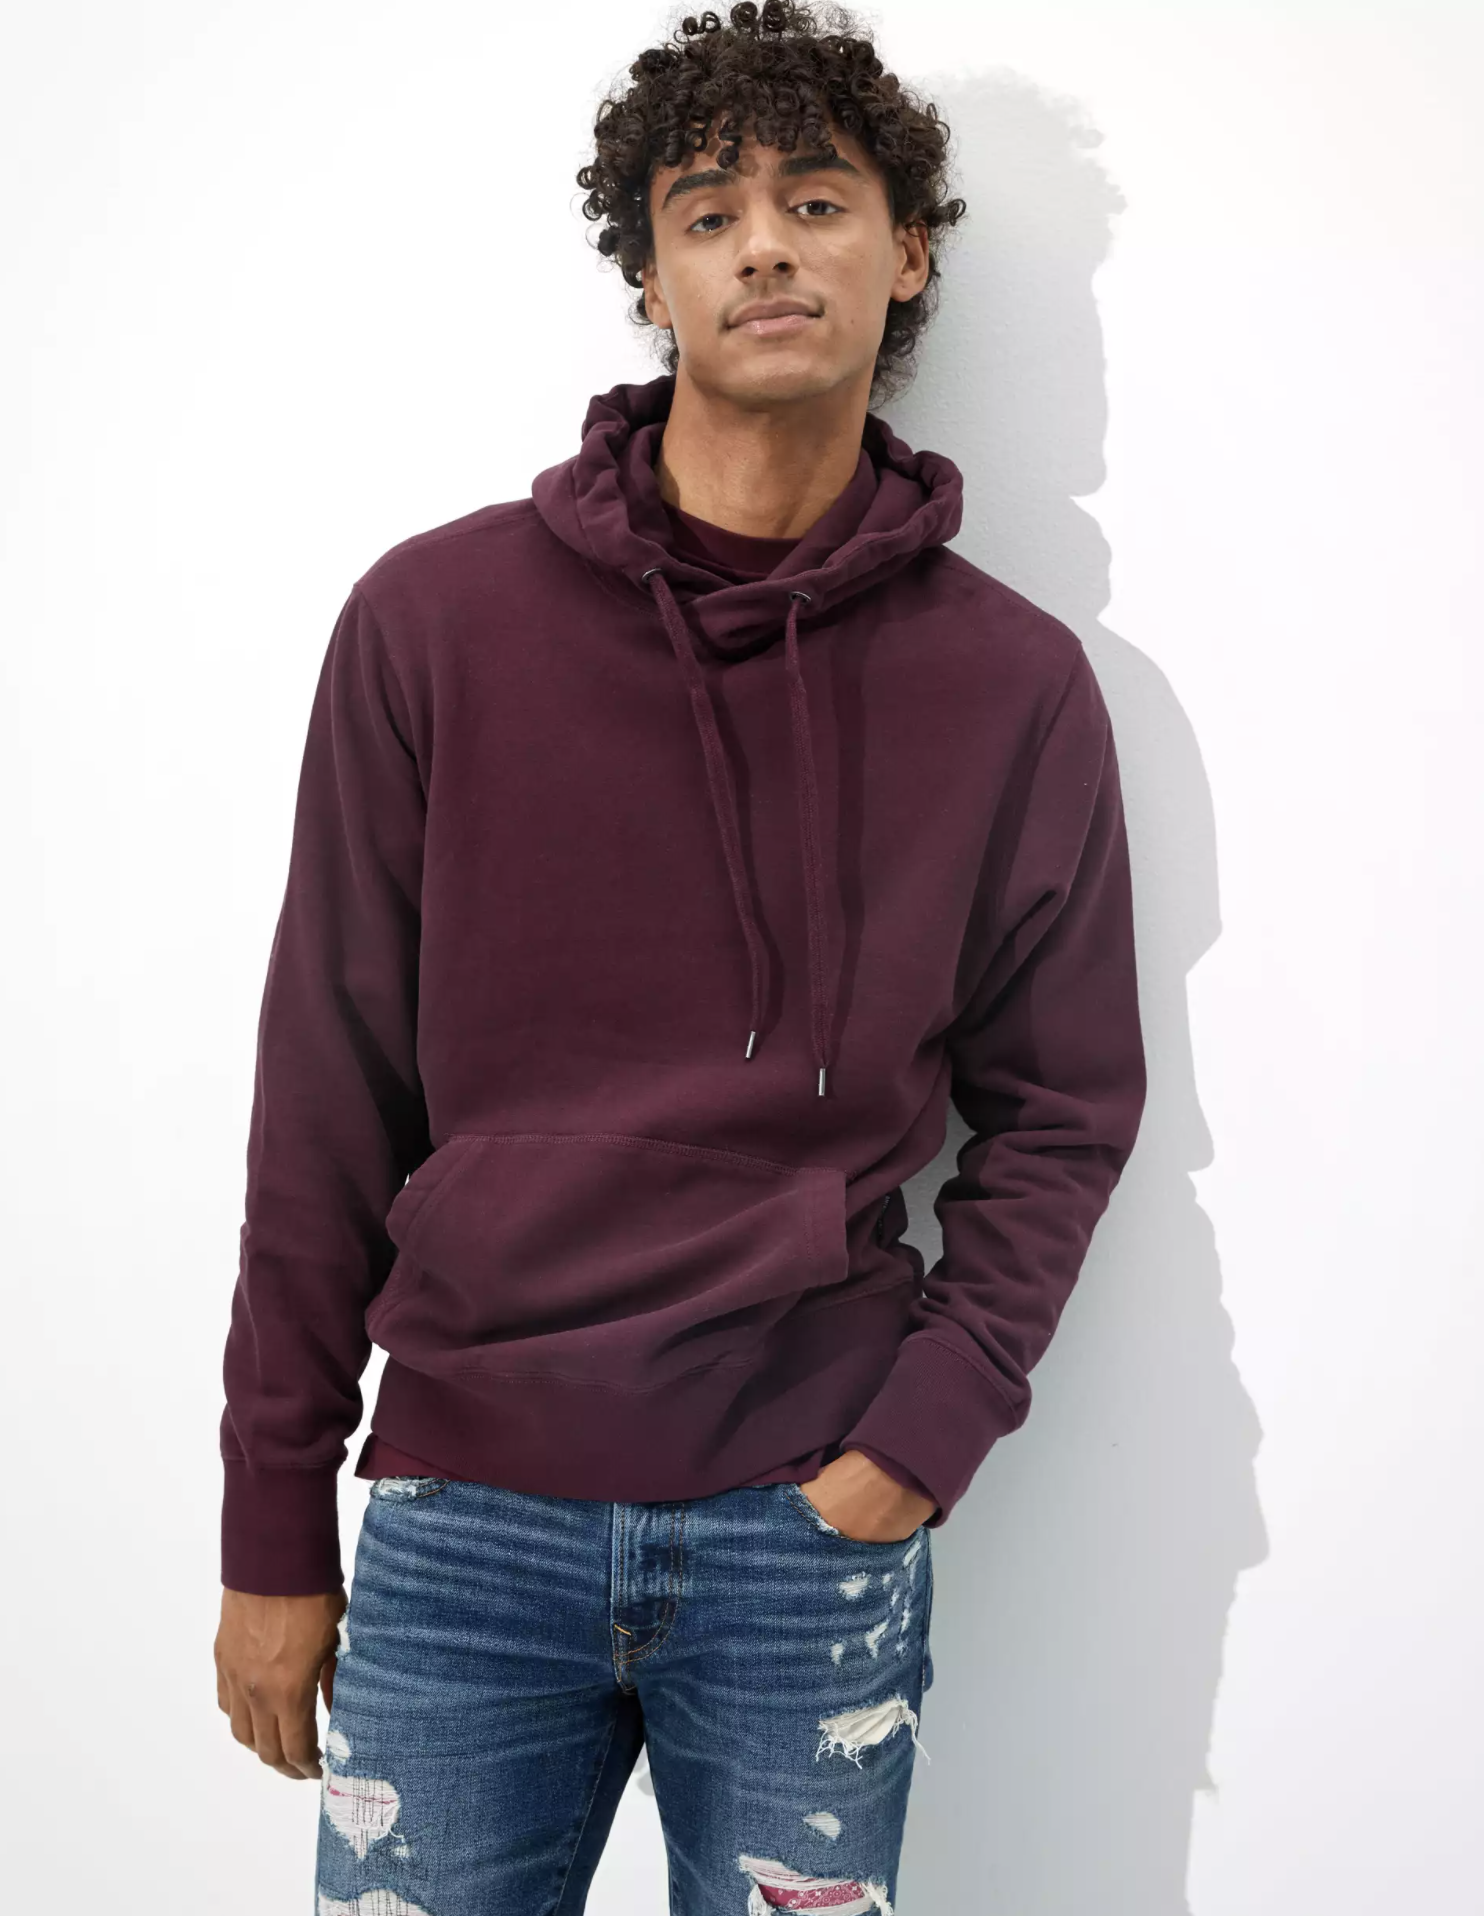 A model wearing the maroon hoodie